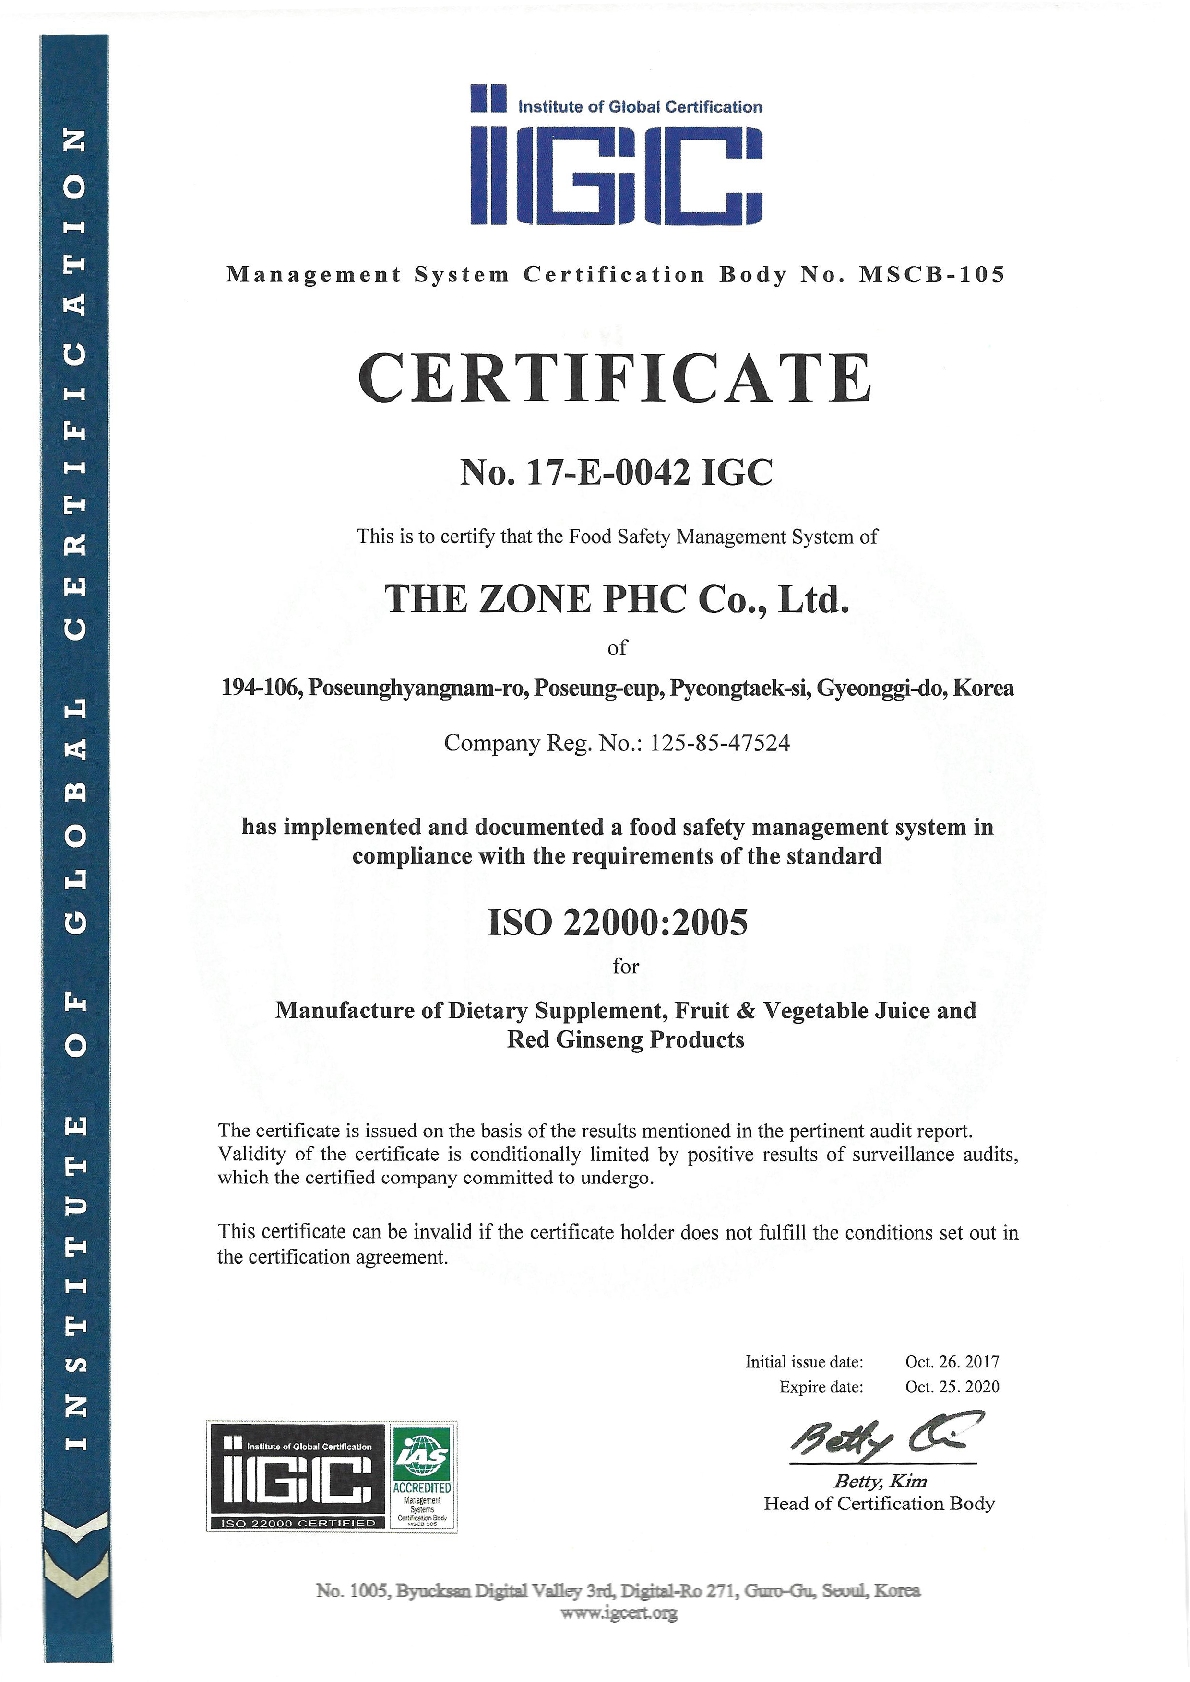 Certi of ISO22000_1.jpg